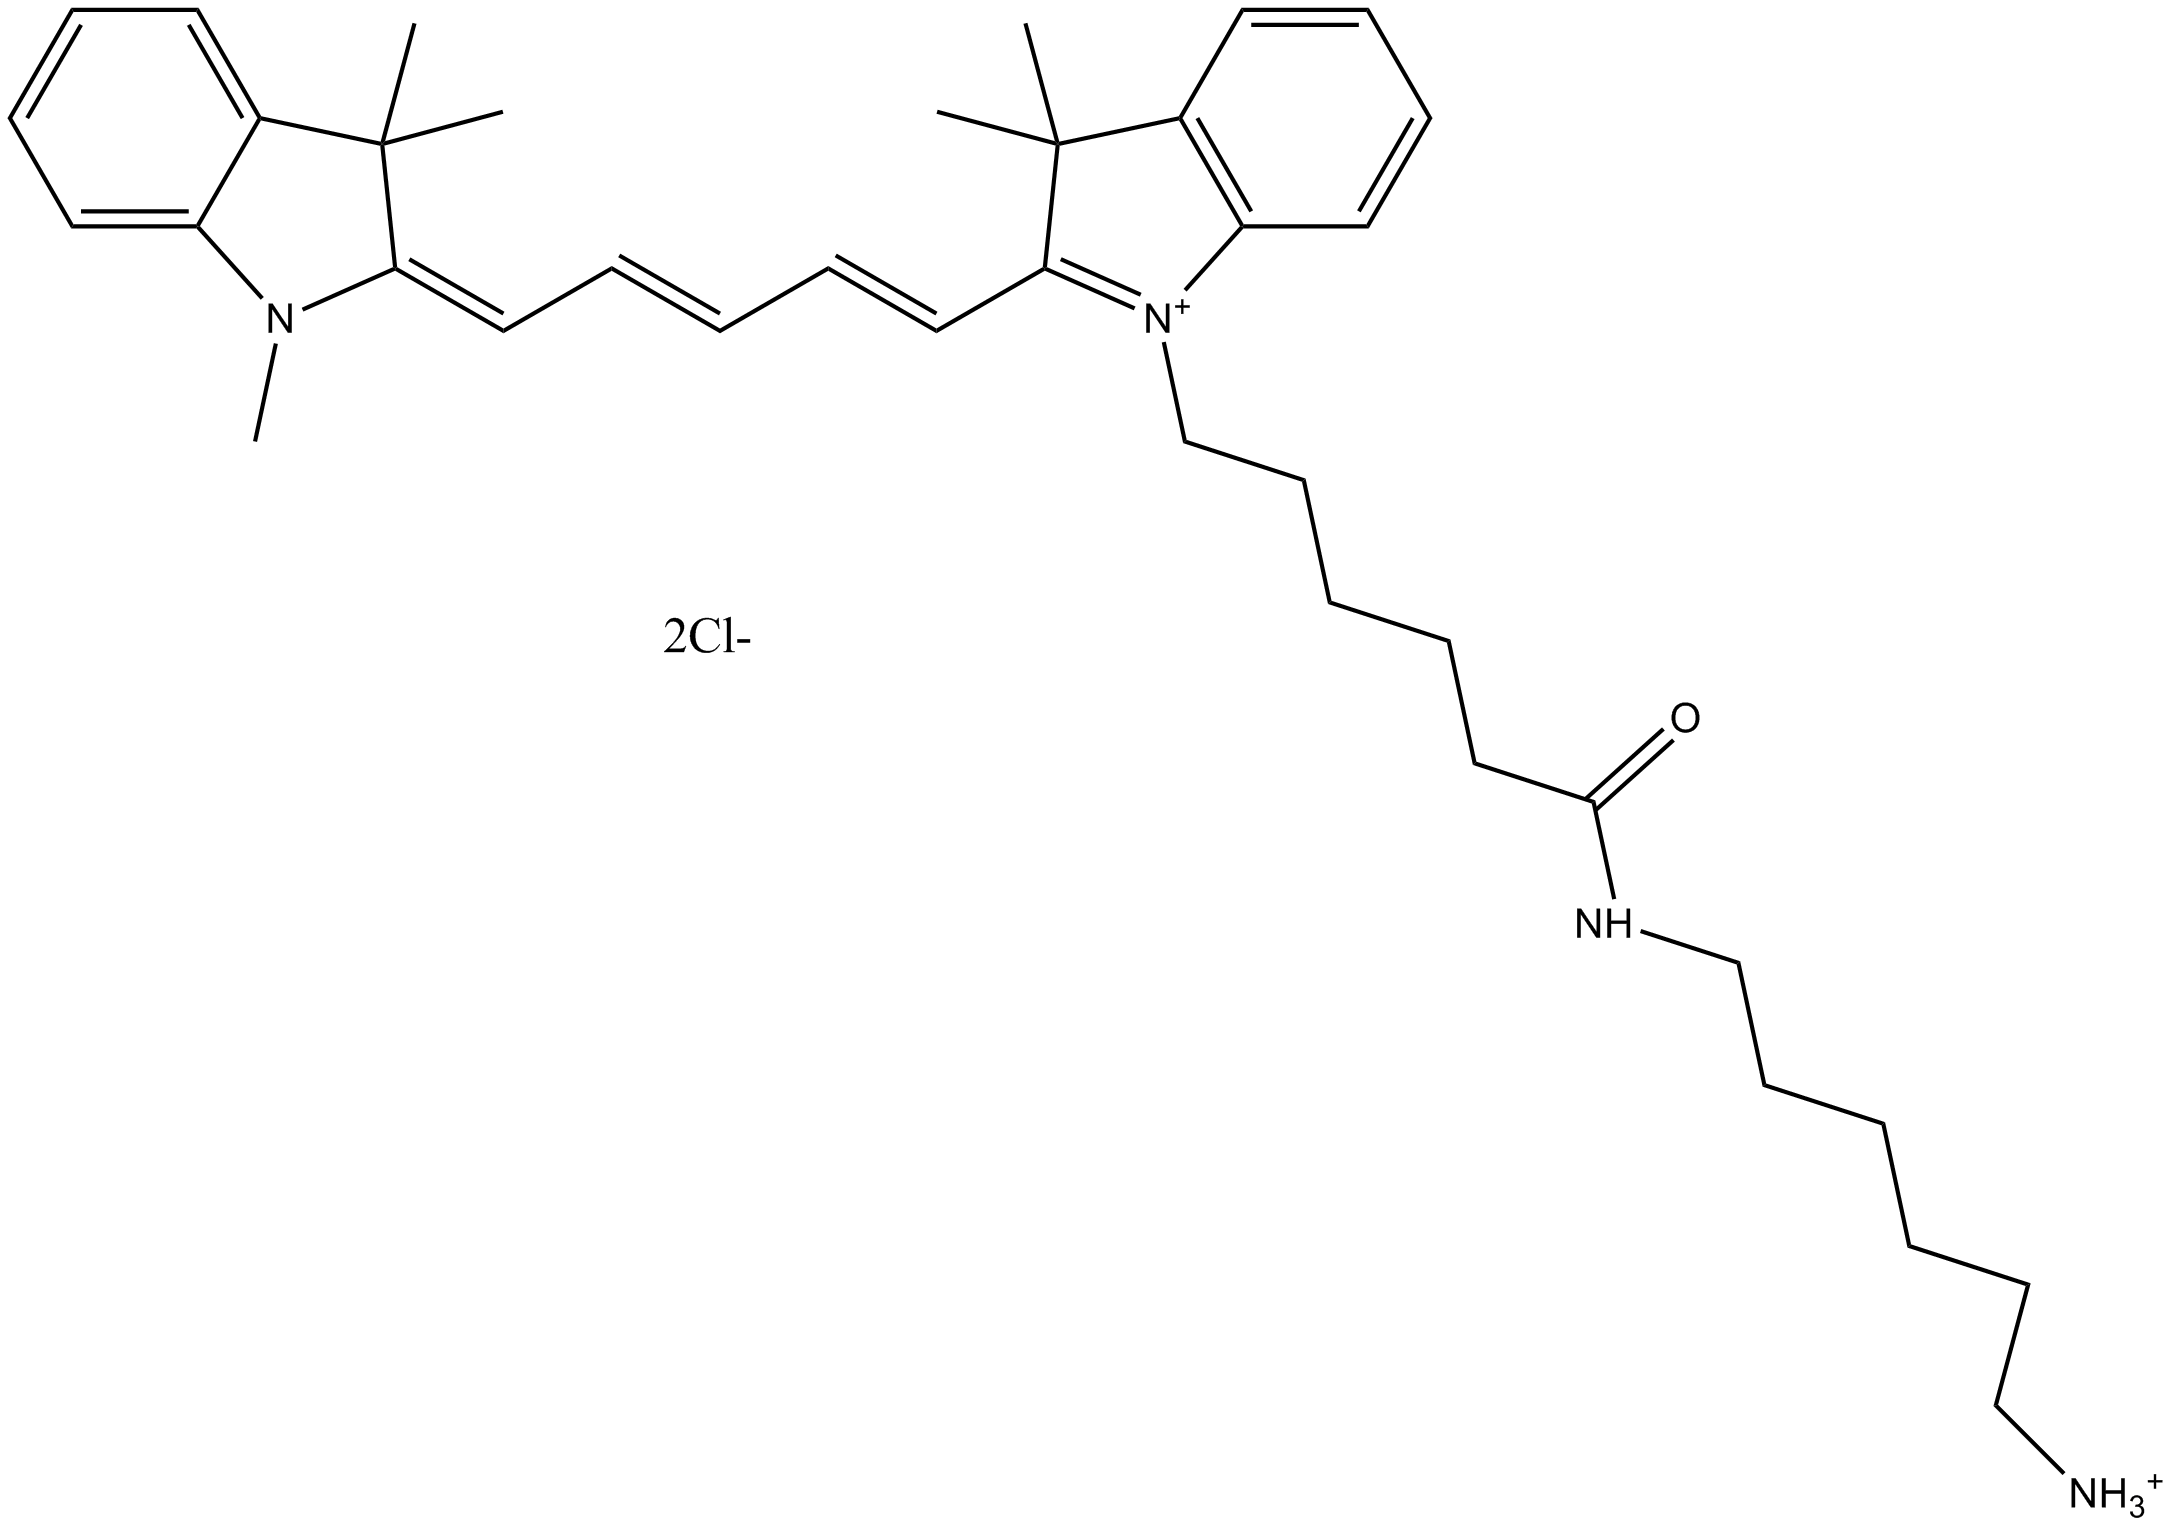 Cy5 amine (non-sulfonated)